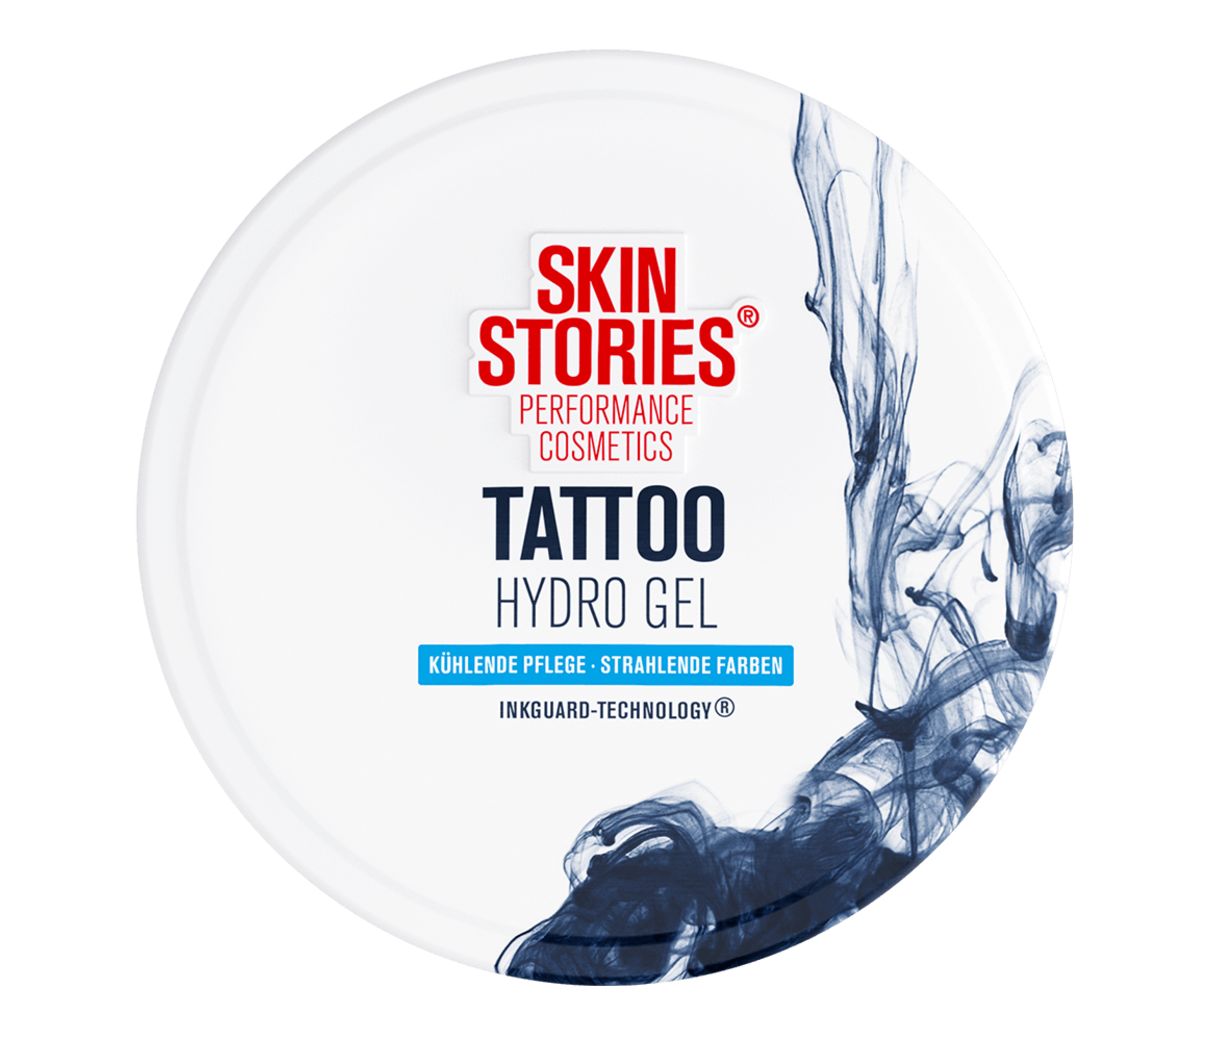 SKIN STORIES I Tattoopflege I Hydro Gel